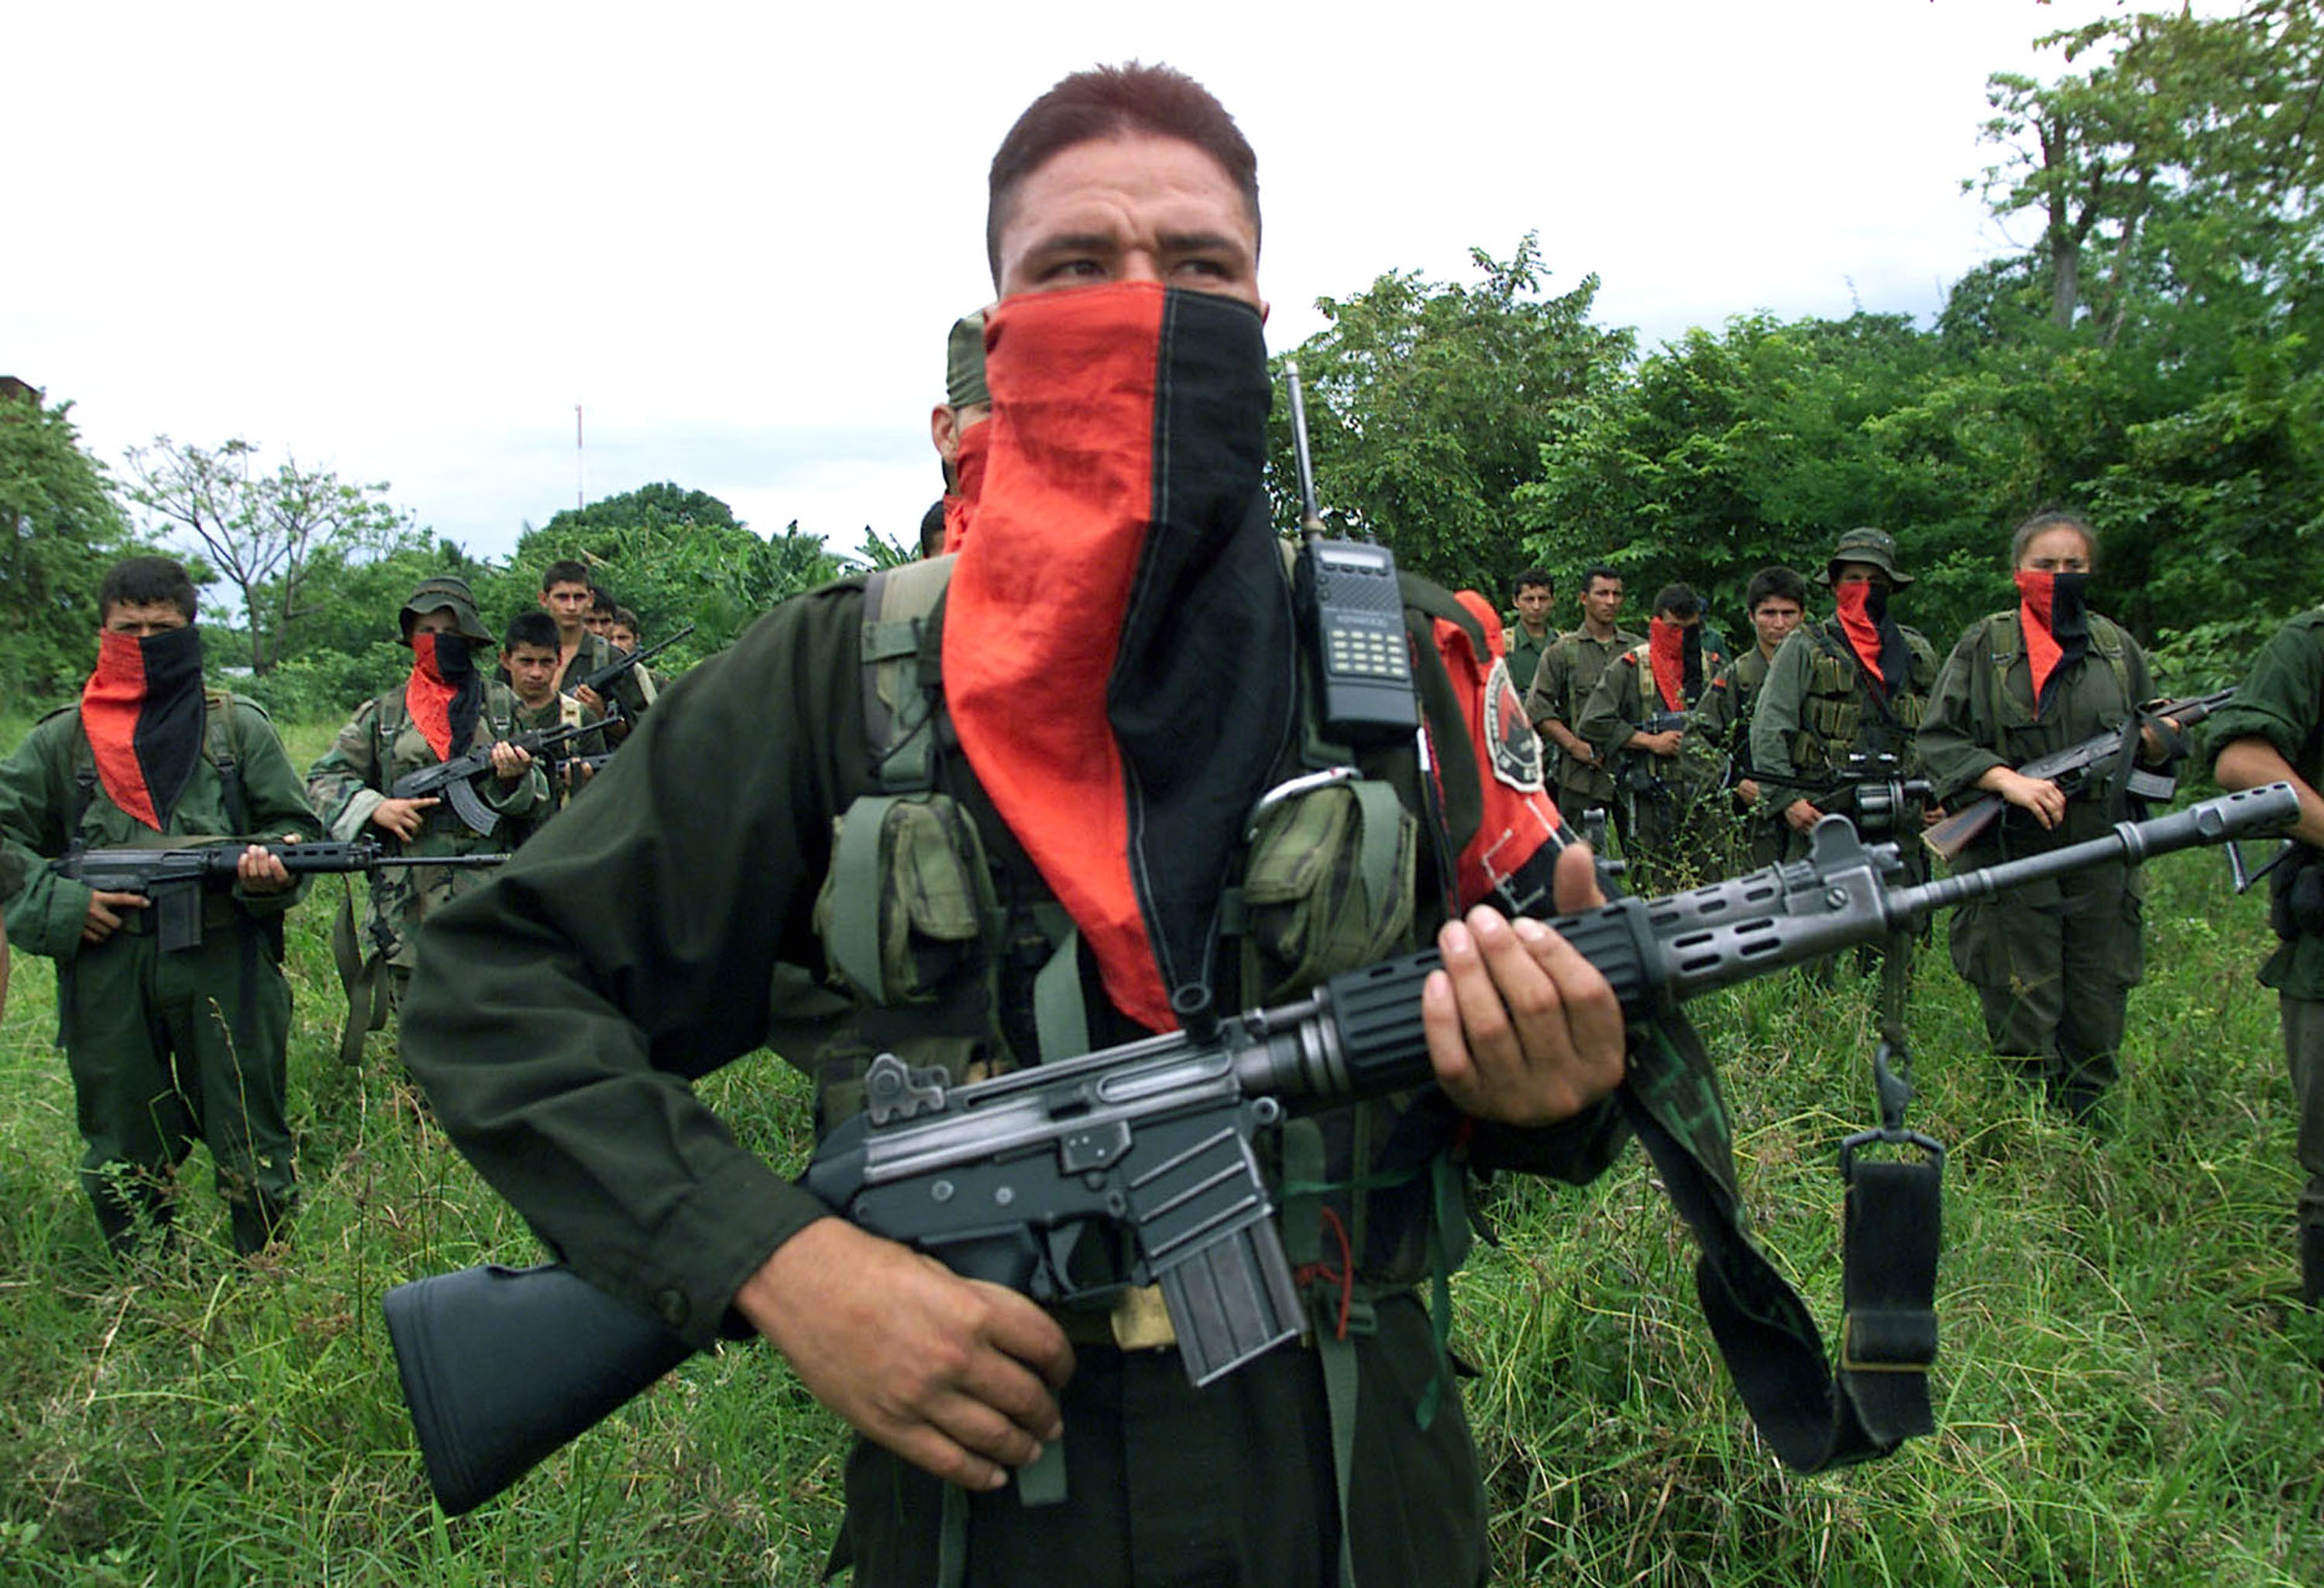 Colombia nog steeds onrustig door geweld platteland